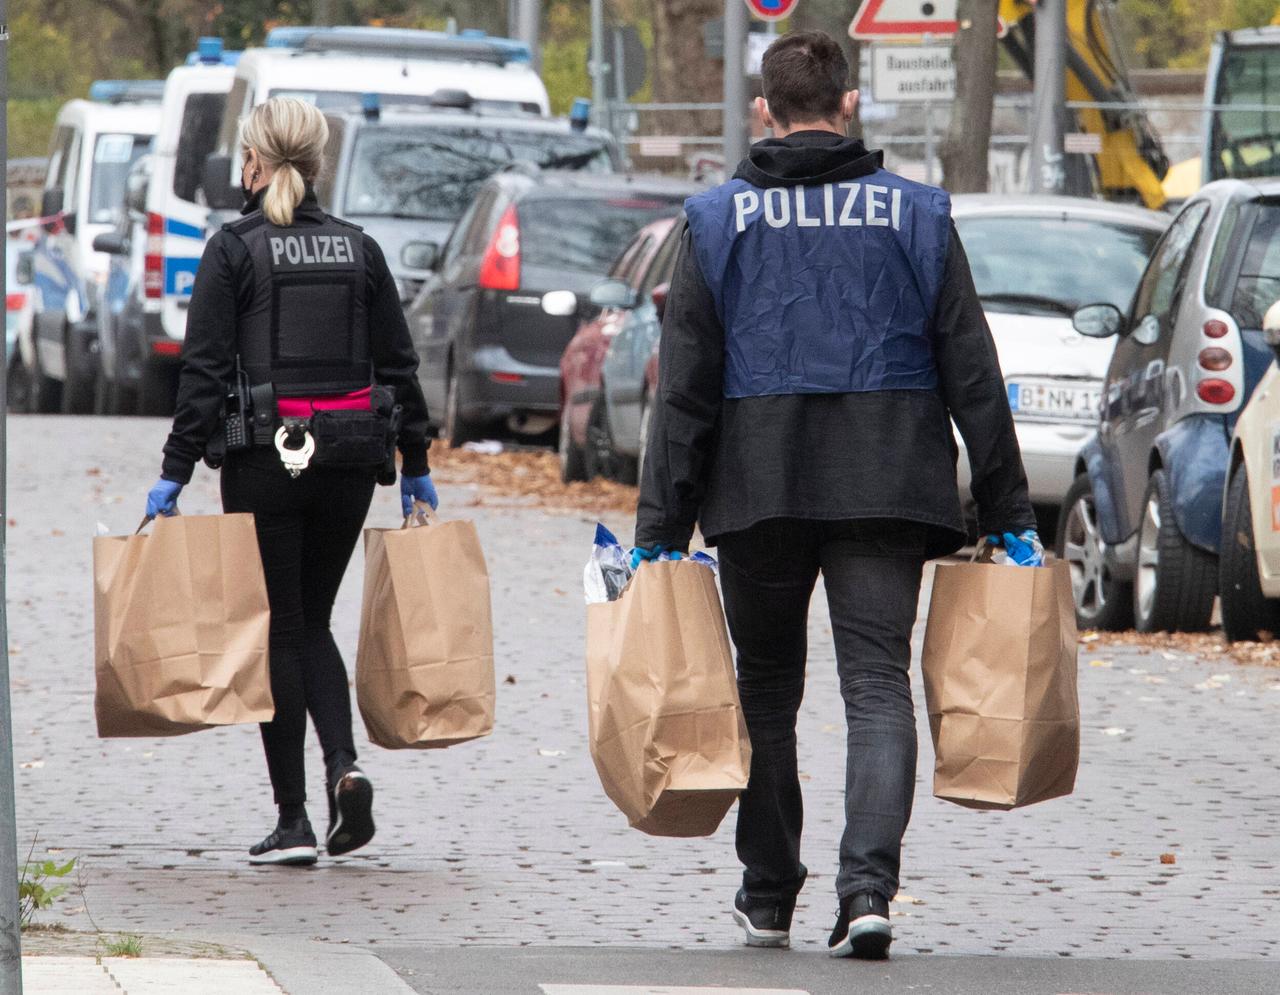 Durchsuchungen in einer Wohnung des Remmo-Clan in Neukölln. Polizeimitarbeitende tragen Beweismittel in braunen Tüten über die Strasse.